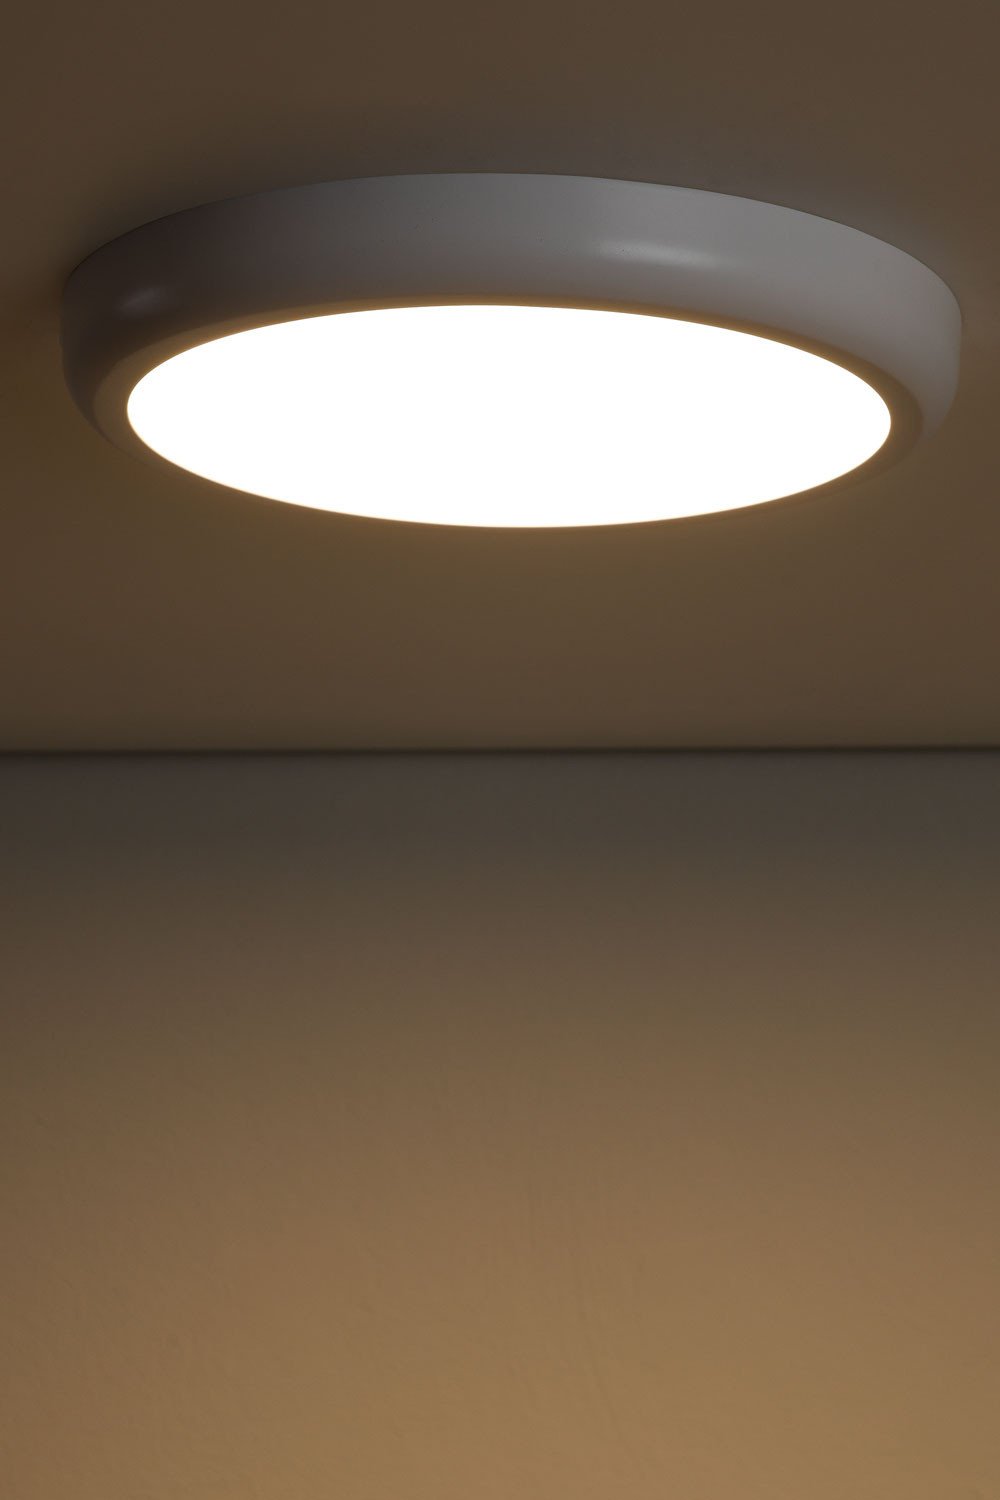 Plafonnier LED en aluminium (Ø30 cm) Tarik, image de la galerie 1